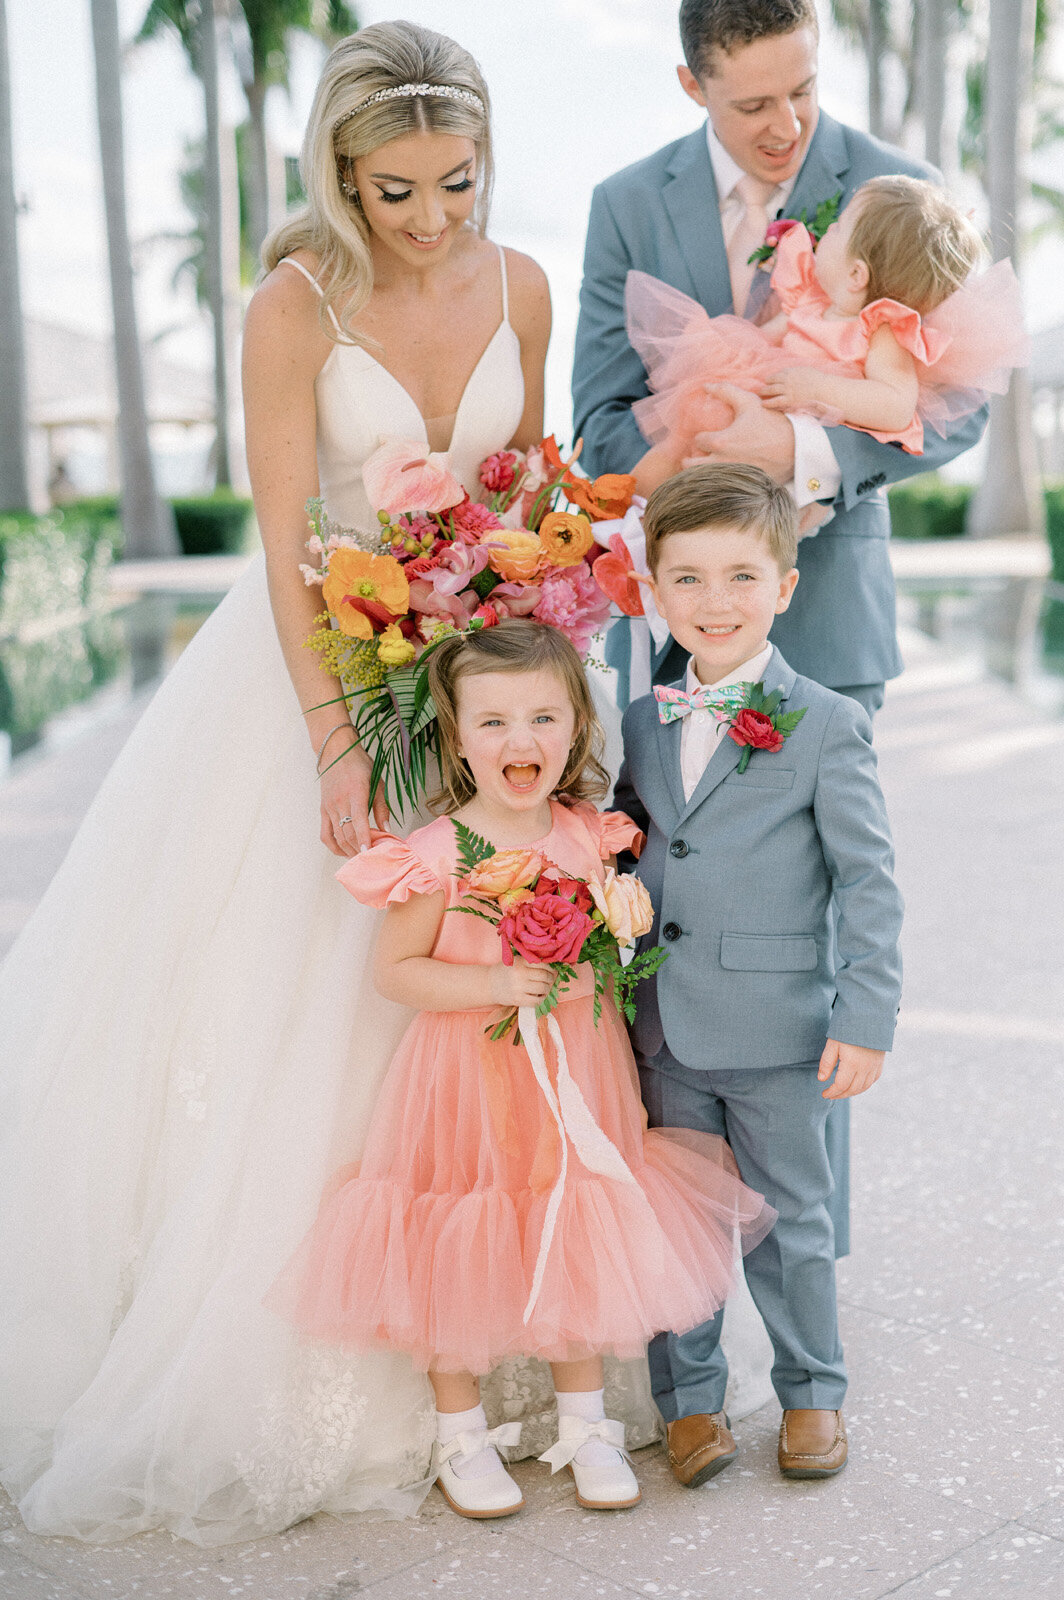 Kate-Murtaugh-Events-tropical-wedding-flower-girls-ring-bearers-Key-West-bride-groom